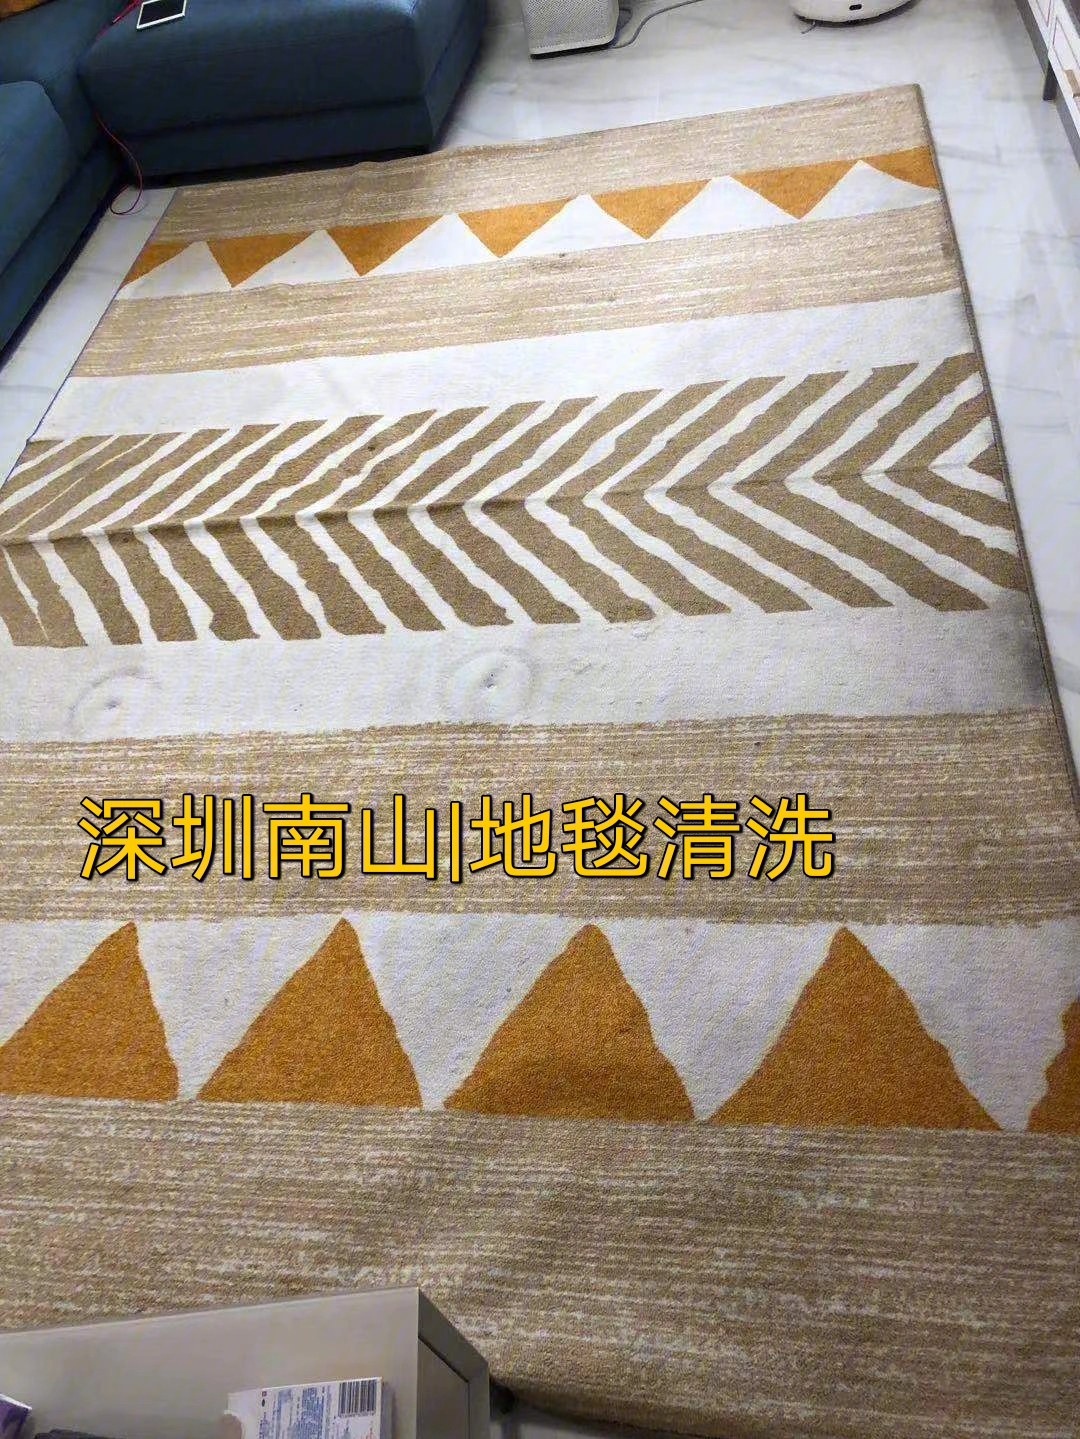 深圳南山地毯清洗